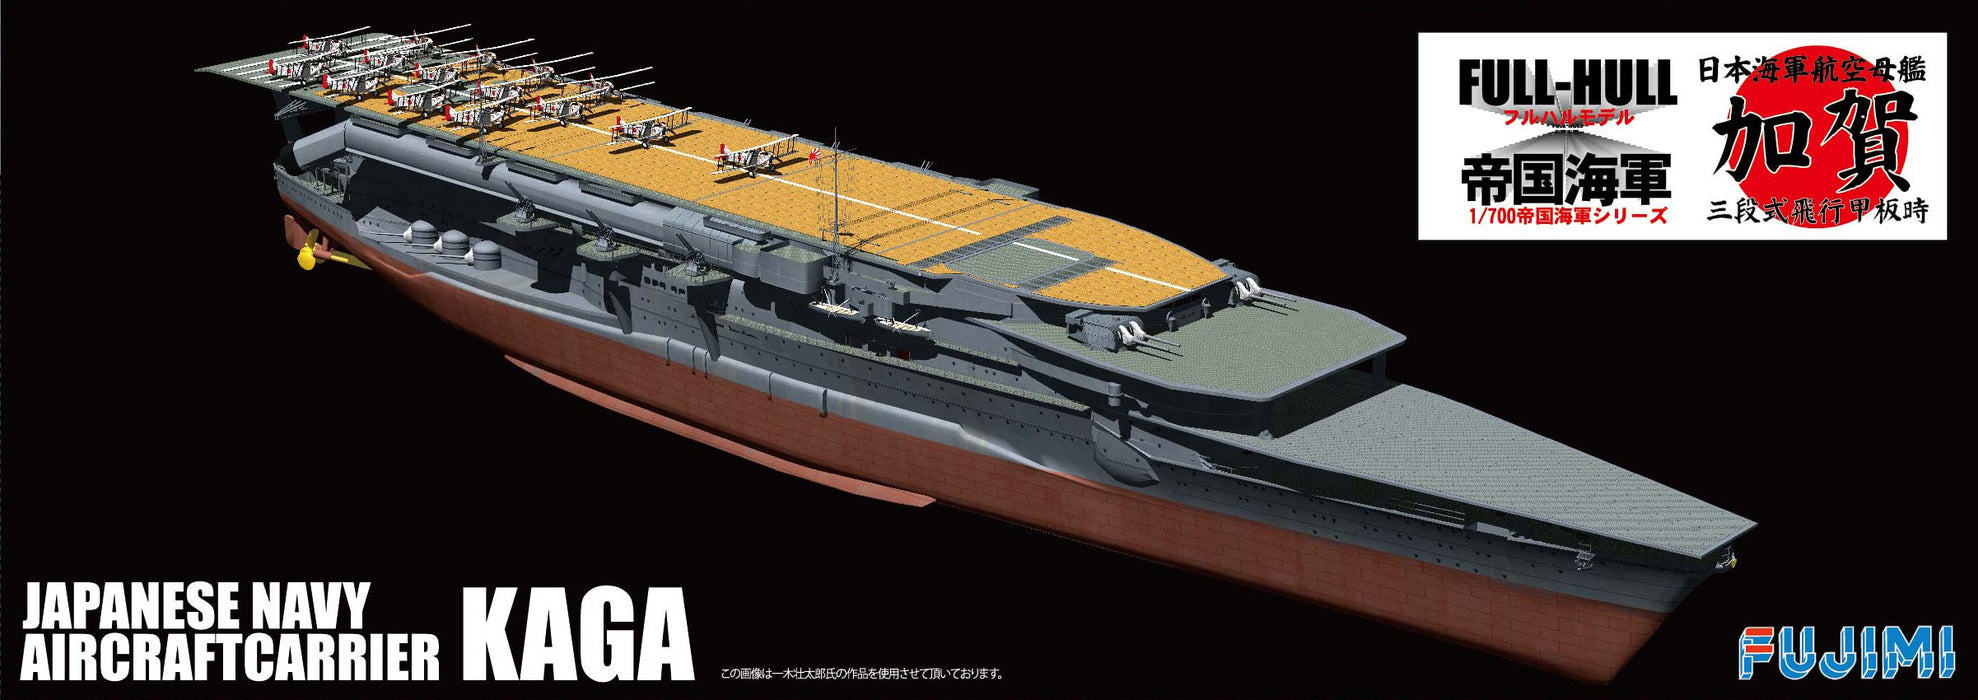 Fujimi Model 1/700 Imperial Navy Series No.33 Japanese Navy Aircraft Carrier Kaga Three-Tier Flight Deck Full Hull Model